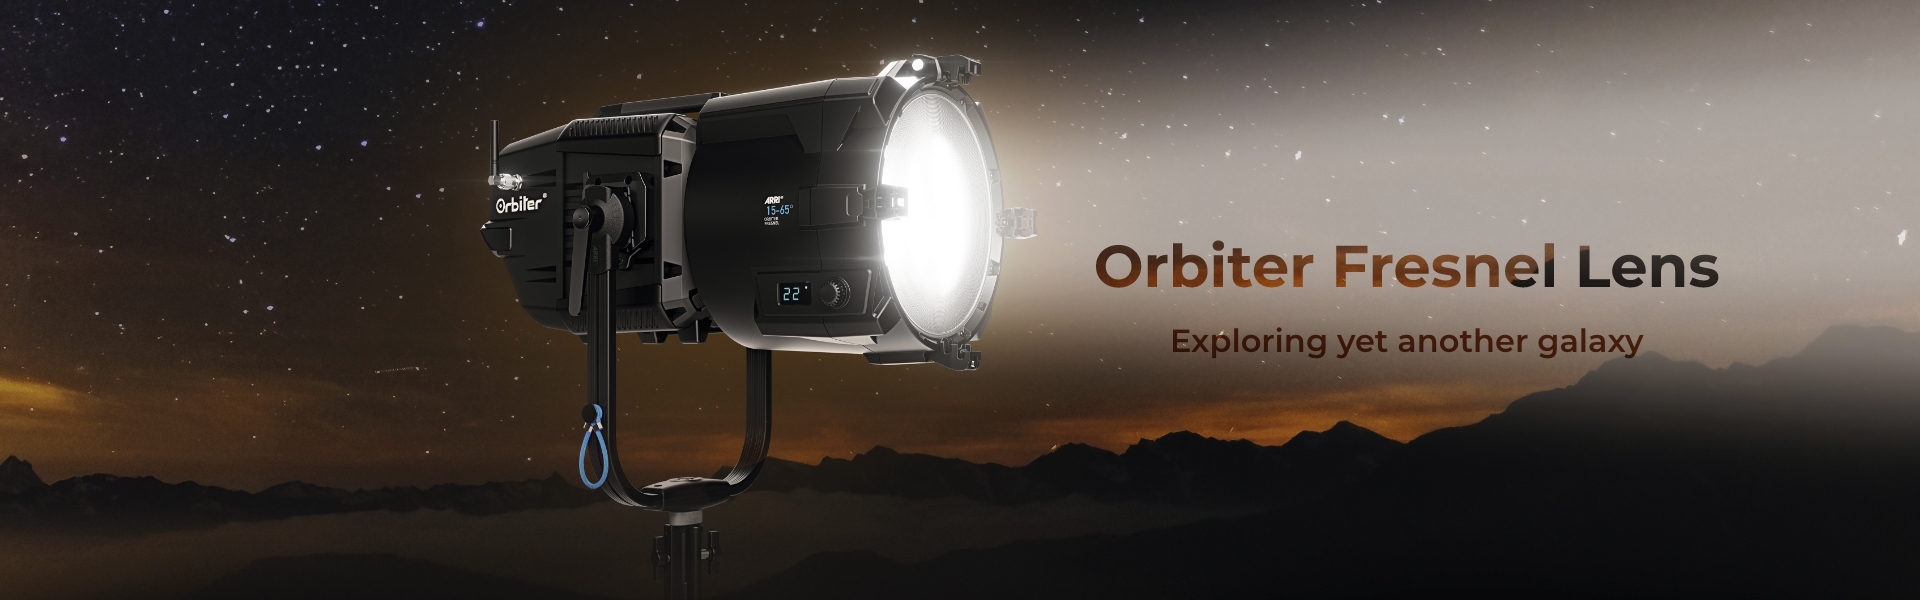 Orbiter fresnel lens 2